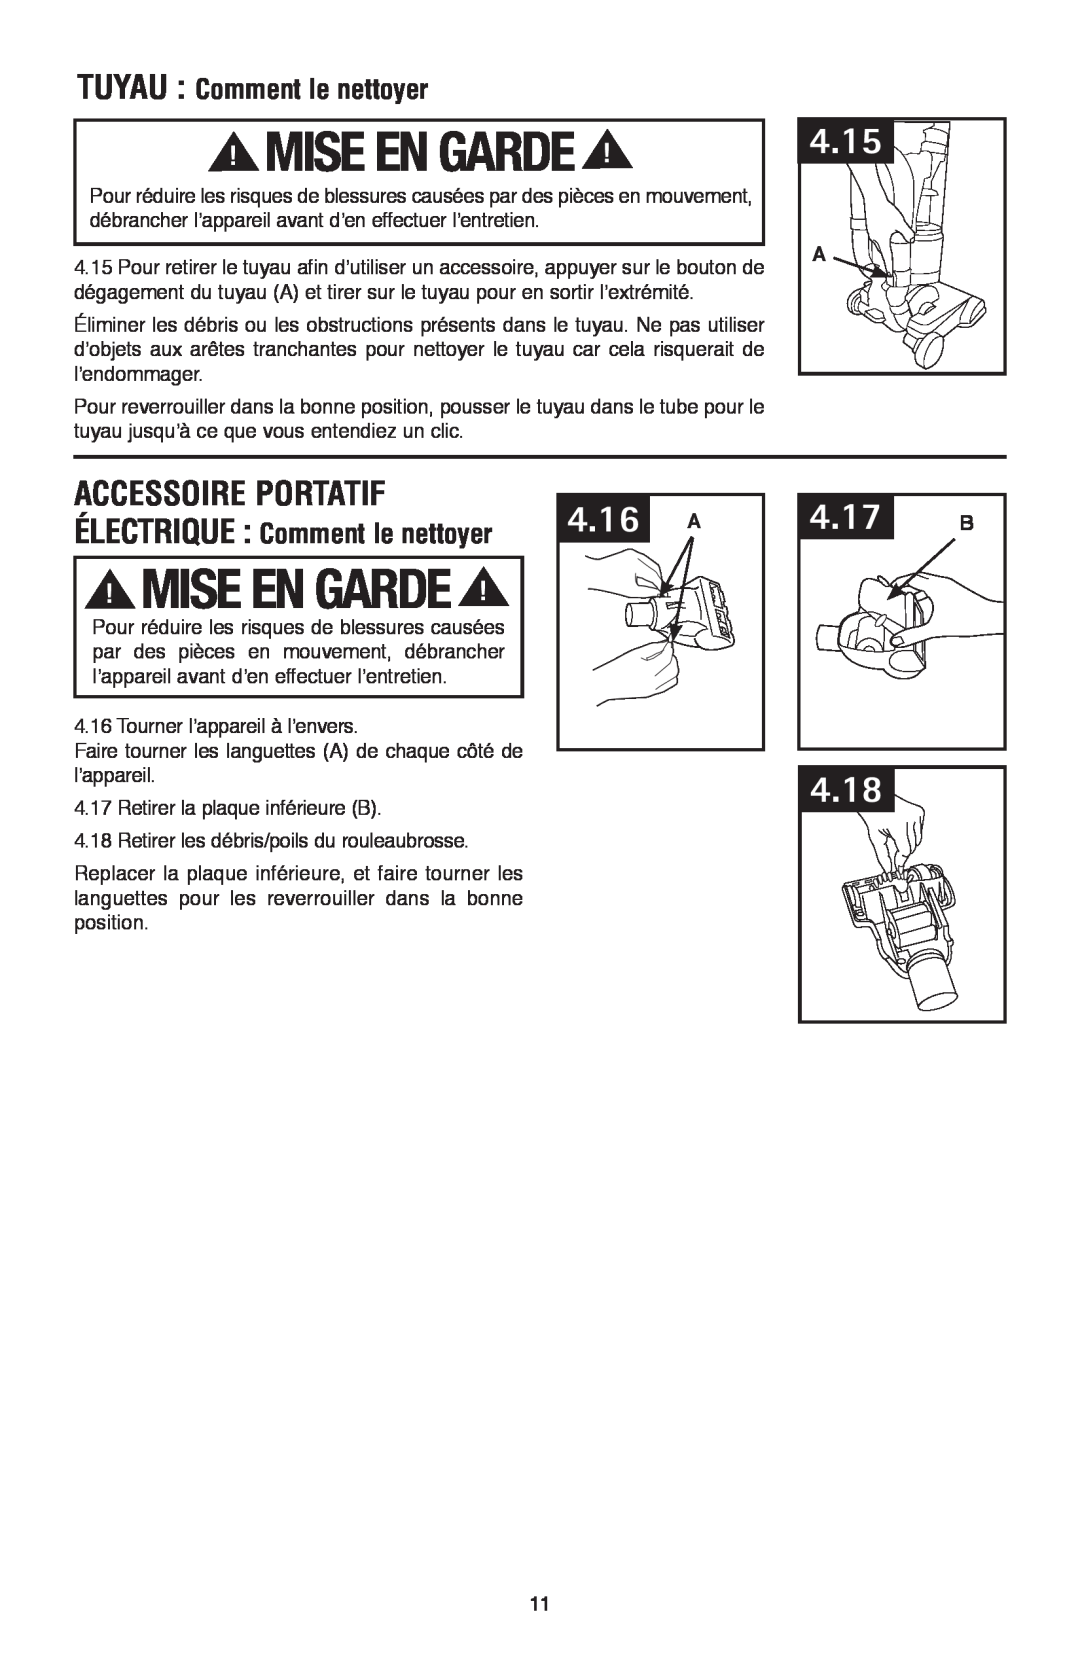 Hoover UH70120 owner manual Accessoire portatif, Mise En Garde, 4.16 A, 4.17 B, 4.15, 4.18, TUYAU Comment le nettoyer 